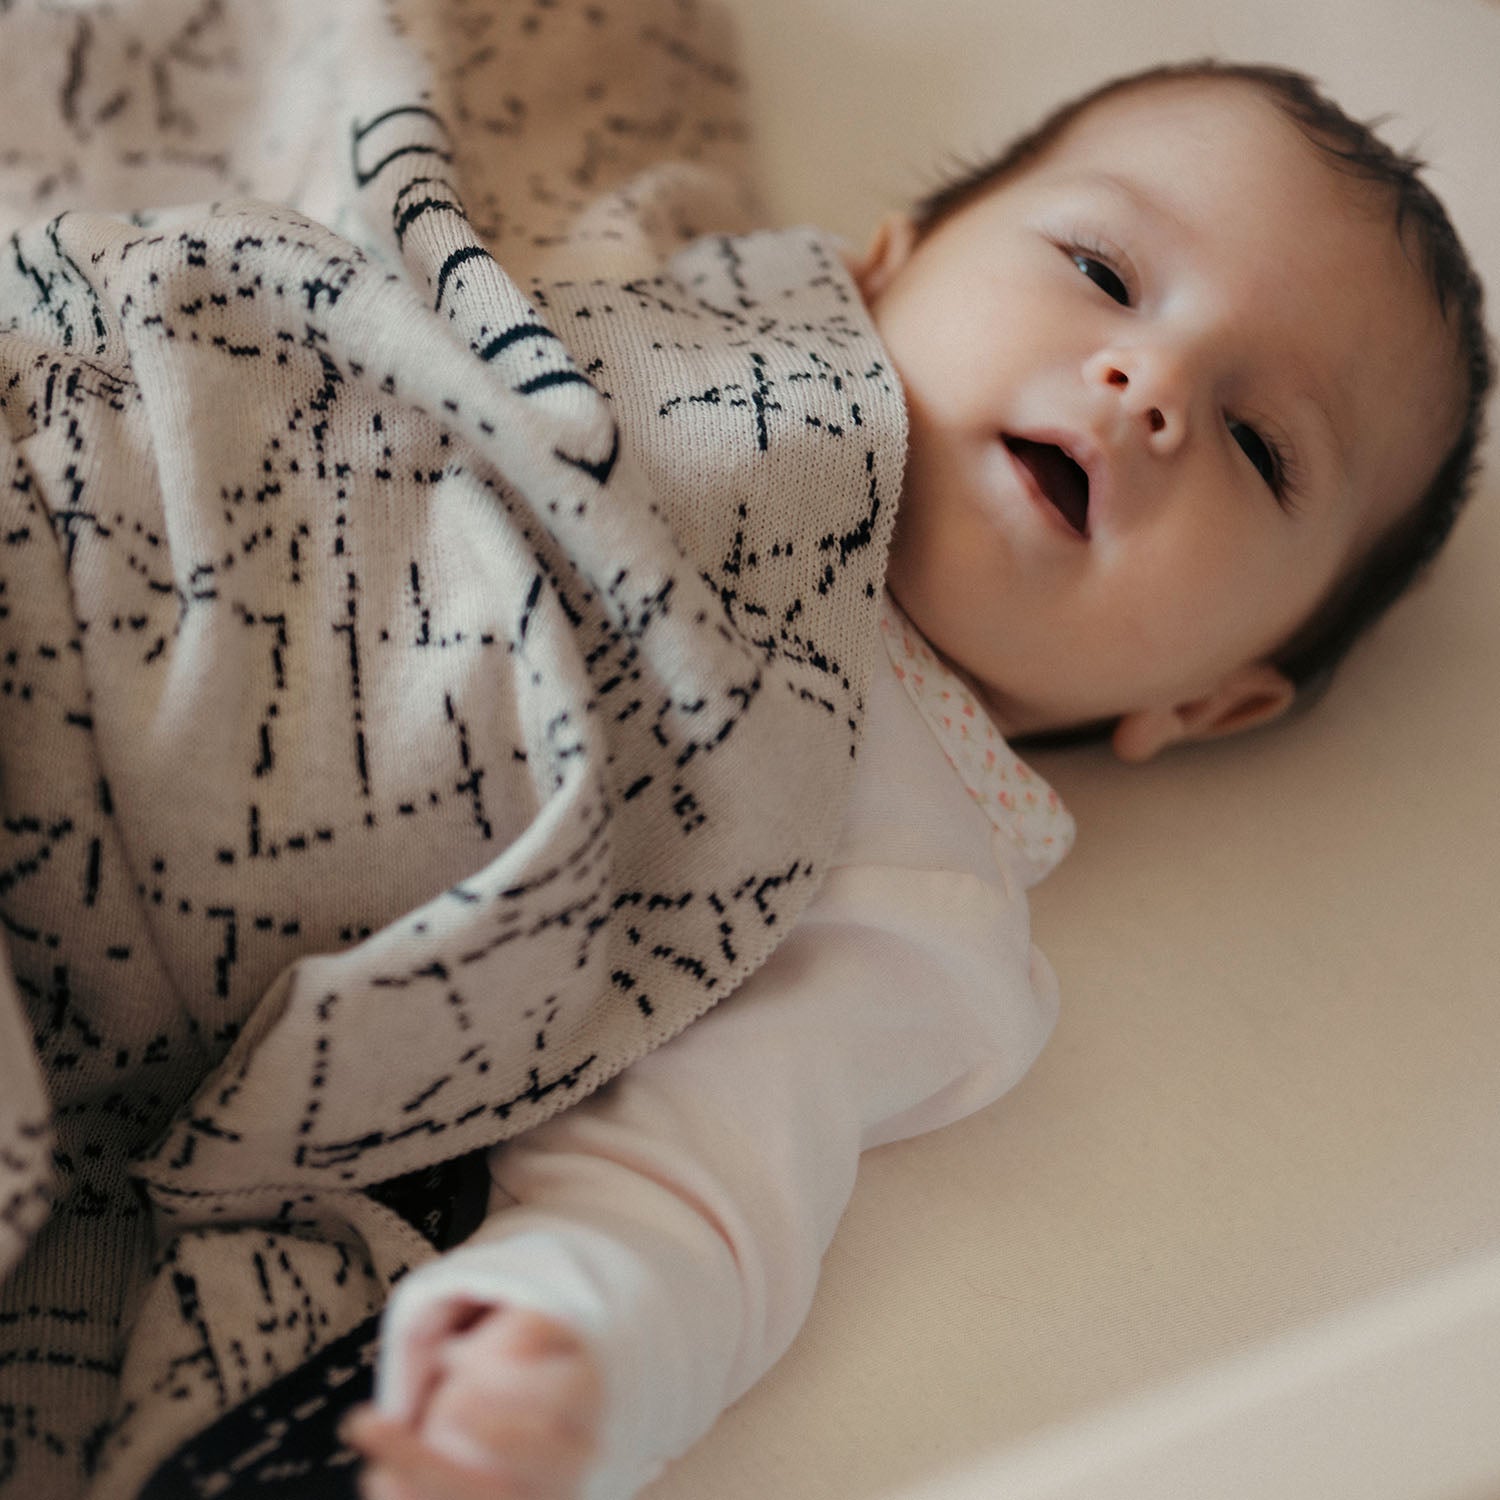 Personalisierte Babydecke 'MIDNIGHT' gestrickt aus Baumwolle mit Kaschmir. Ein ganz besonderes Geschenk zur Geburt und Taufe für Babys und die werdenden Eltern. Individuell personalisierbar mit dem Wunschnamen des Kindes. By LILIMOON